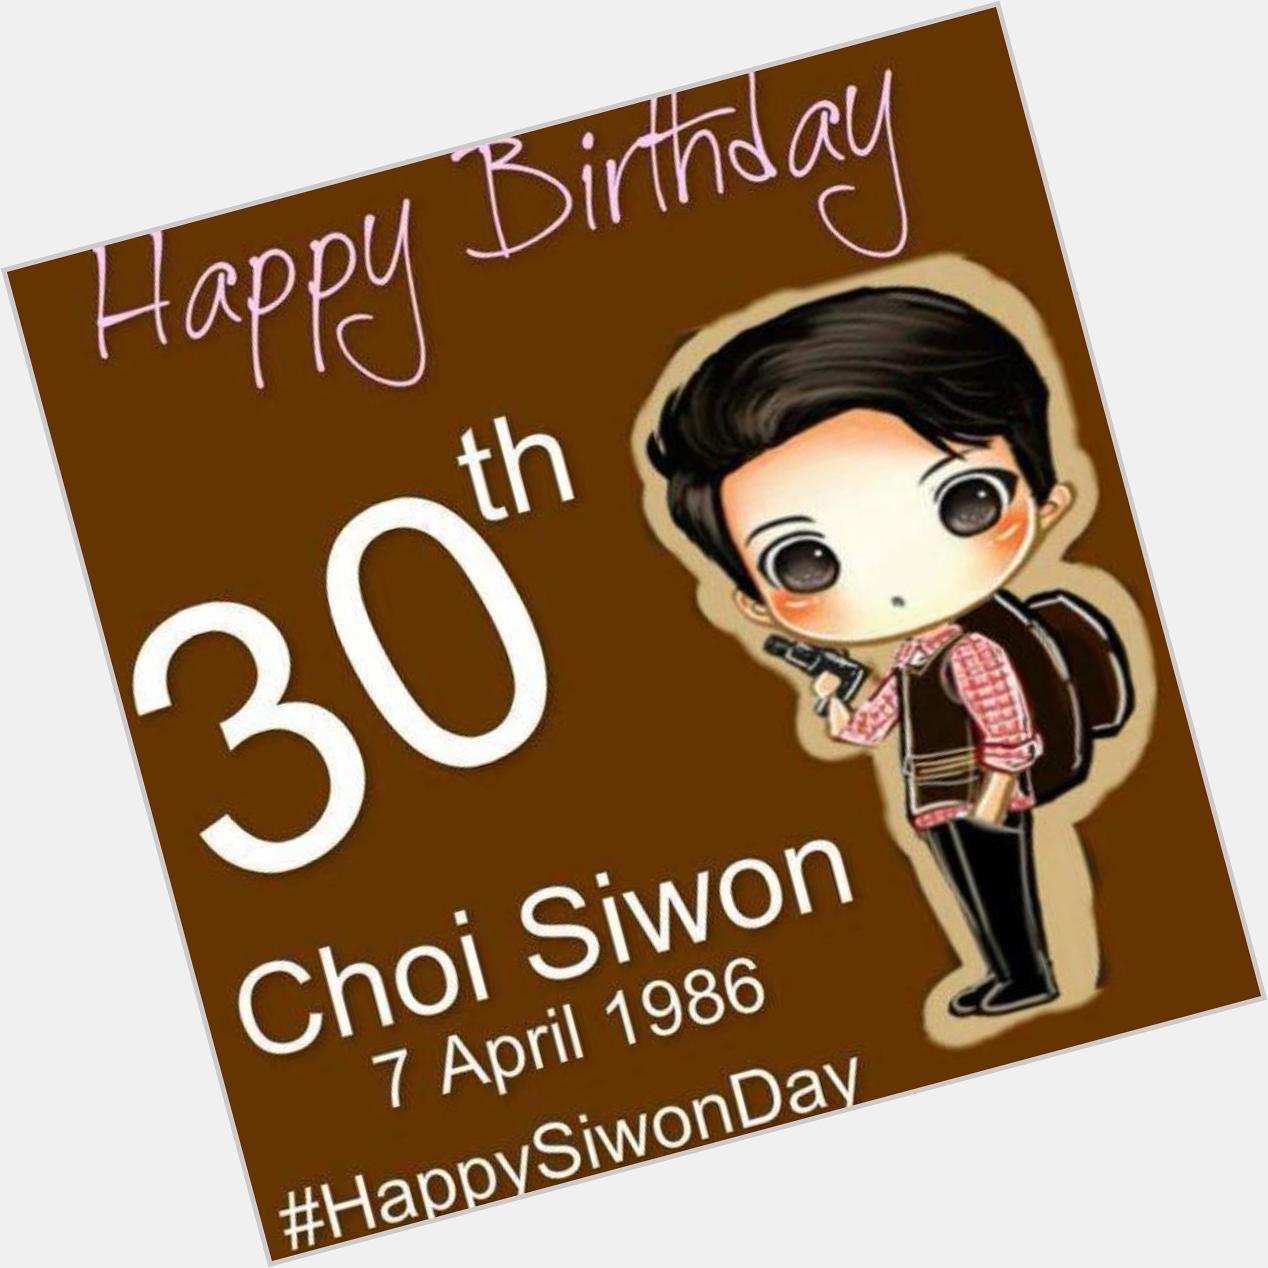 Happy birthday choi siwon 